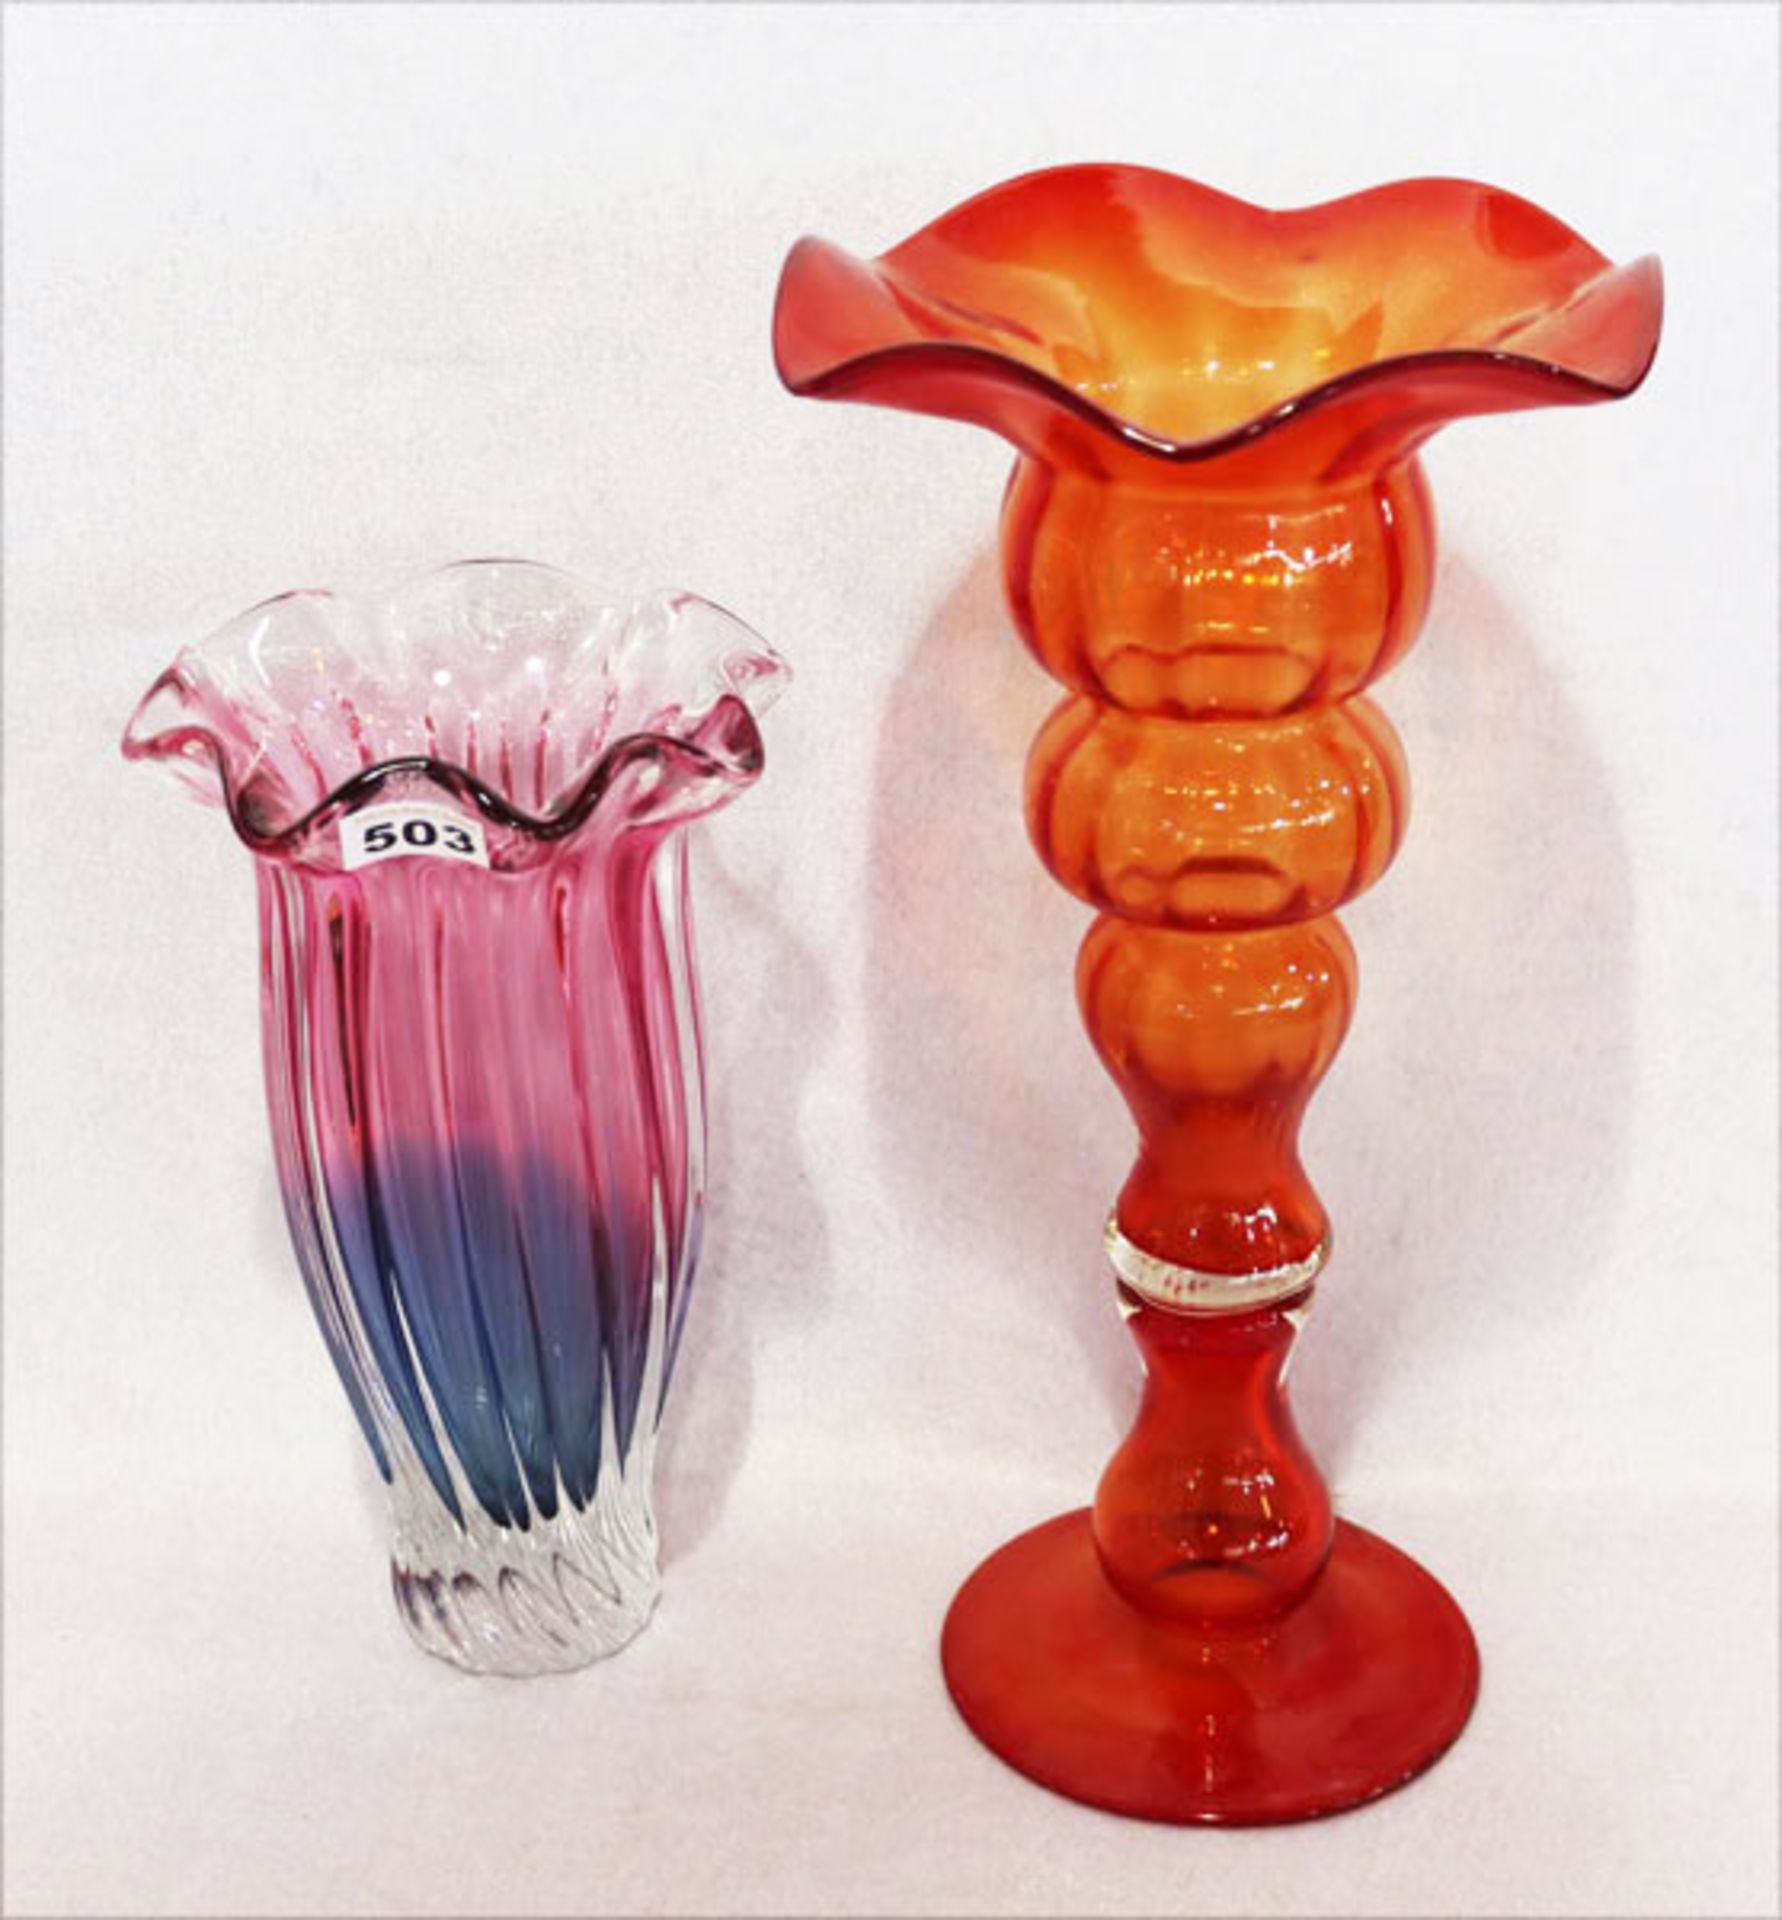 Ausgefallene orange/rote Glasvase, H 42 cm, und lila/blaue Glasvase, H 30 cm, Gebrauchsspuren